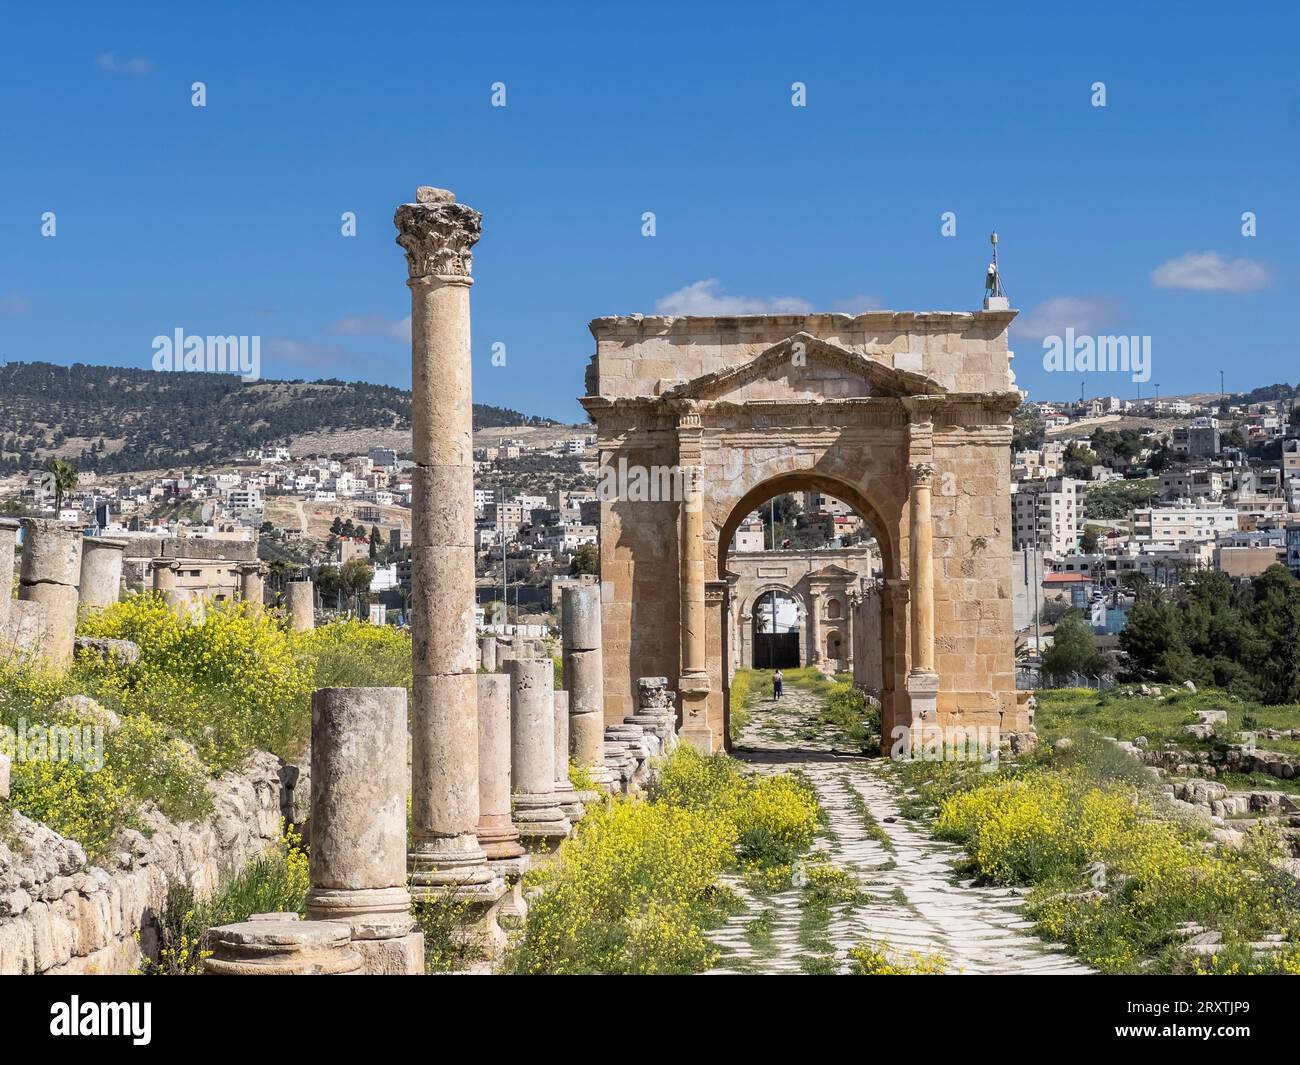 Arco colonnato nell'antica città di Jerash, che si ritiene sia stato fondato nel 331 a.C. da Alessandro Magno, Jerash, Giordania, Medio Oriente Foto Stock